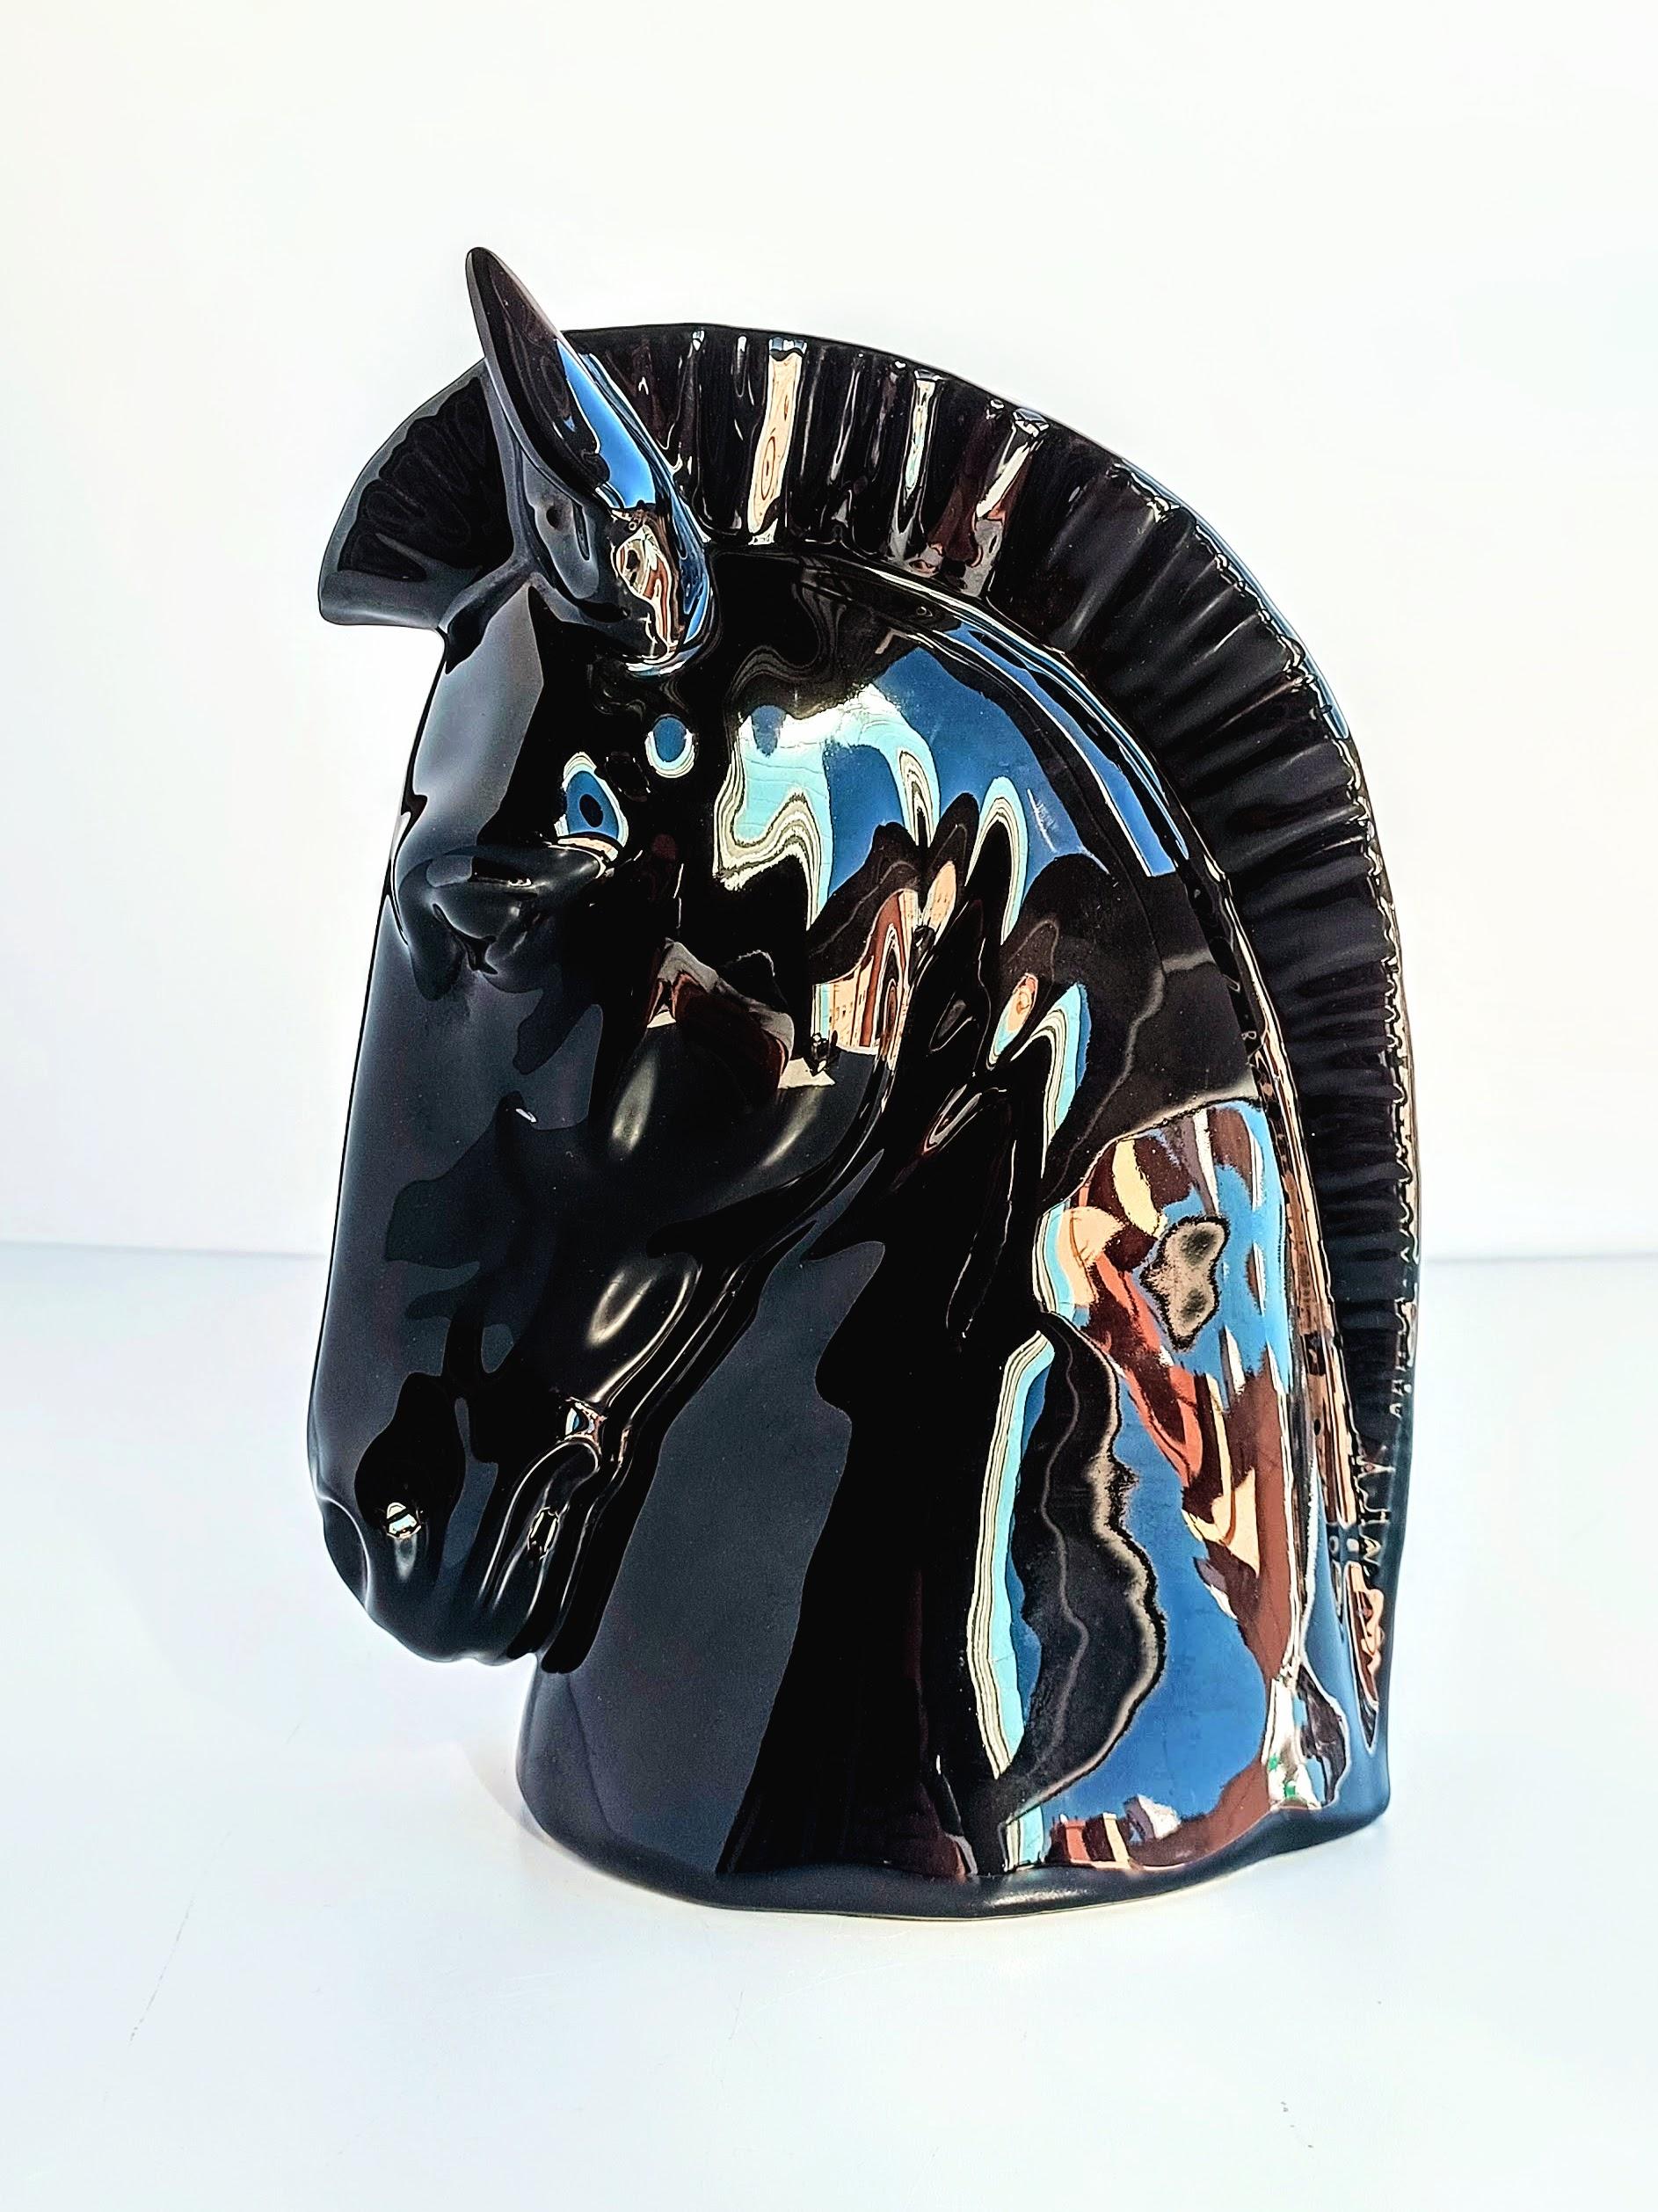 horse head ceramic